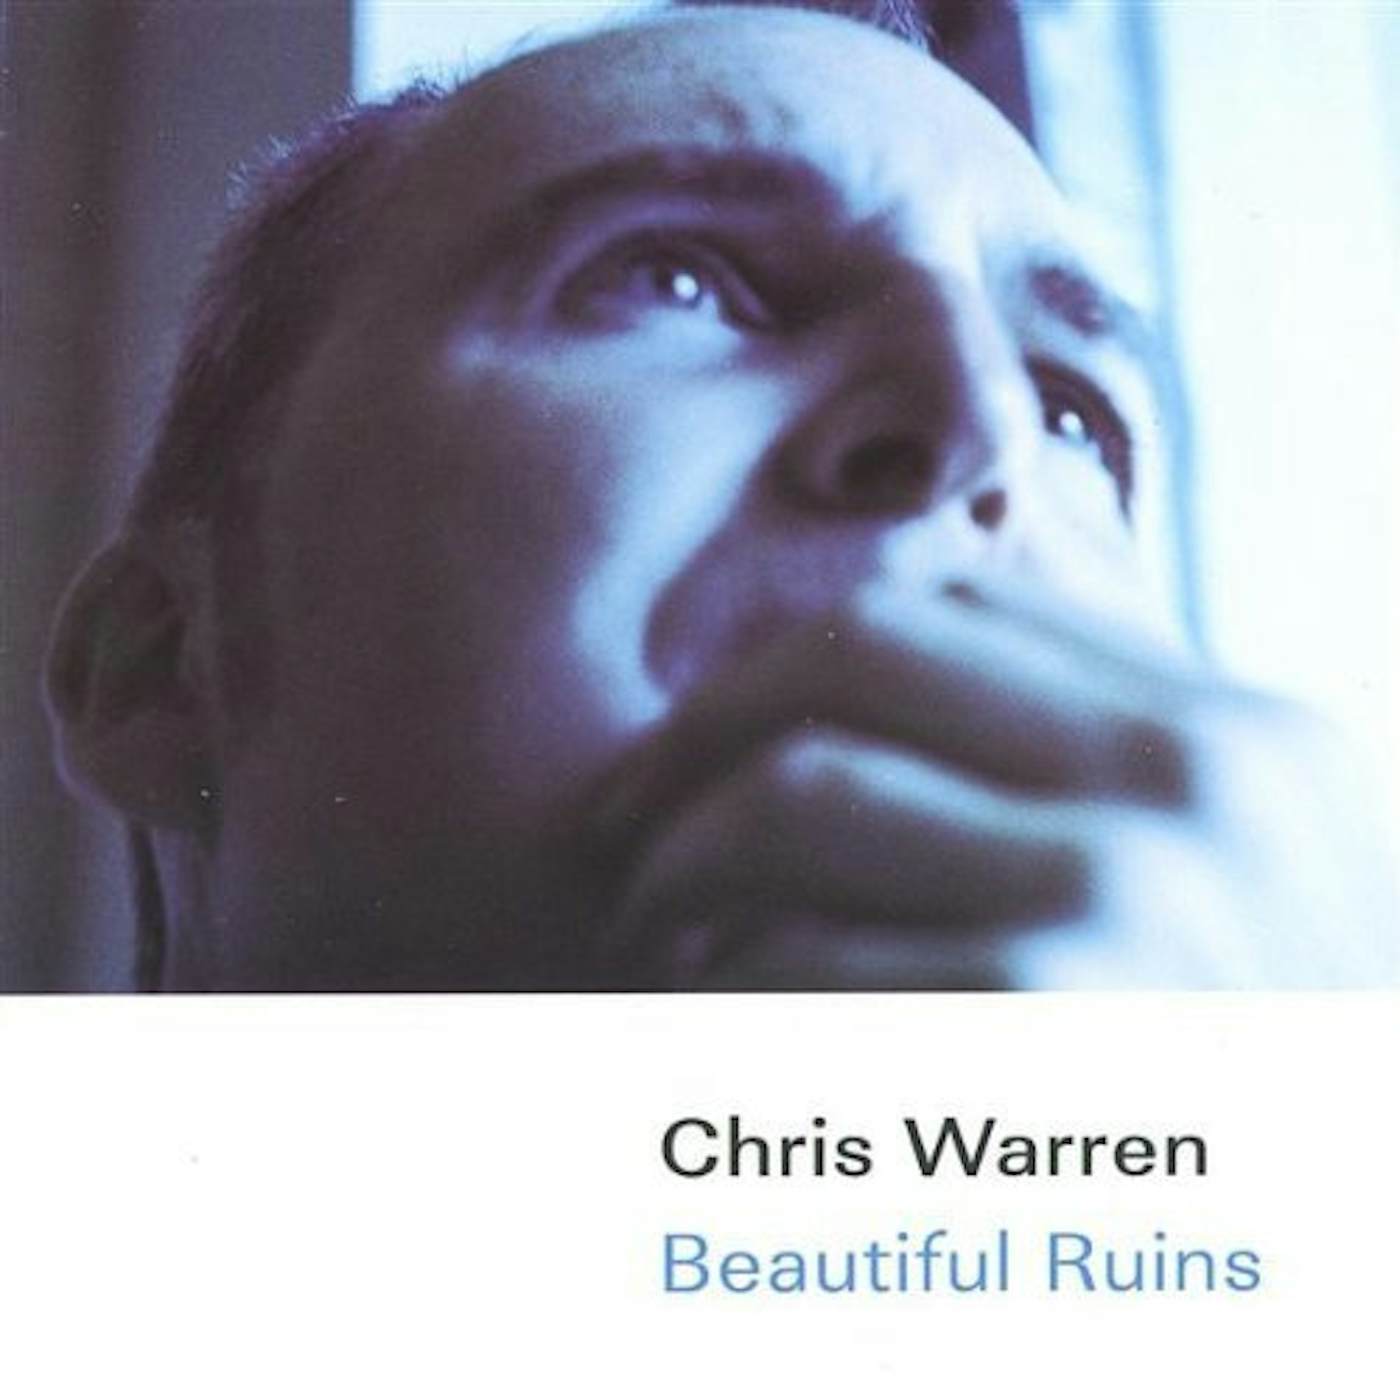 Chris Warren CRAZY WISDOM CD